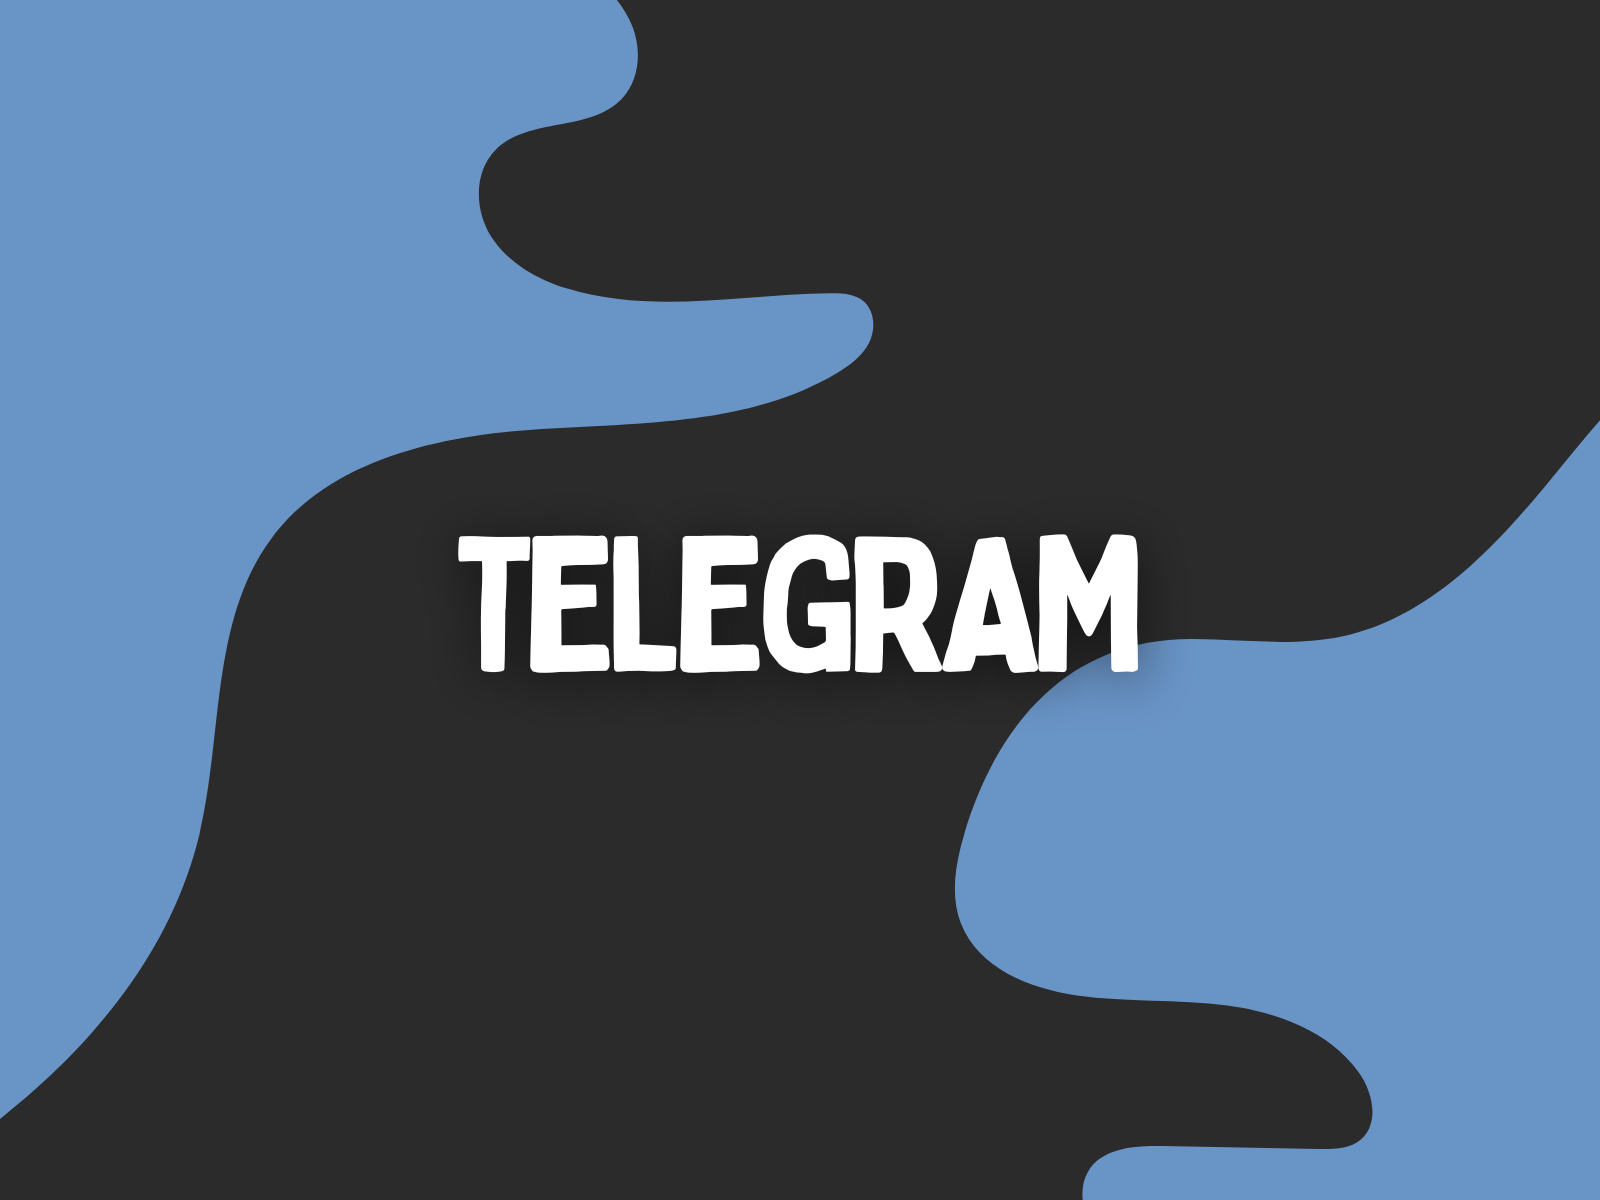 Telegram Premium Upgrade